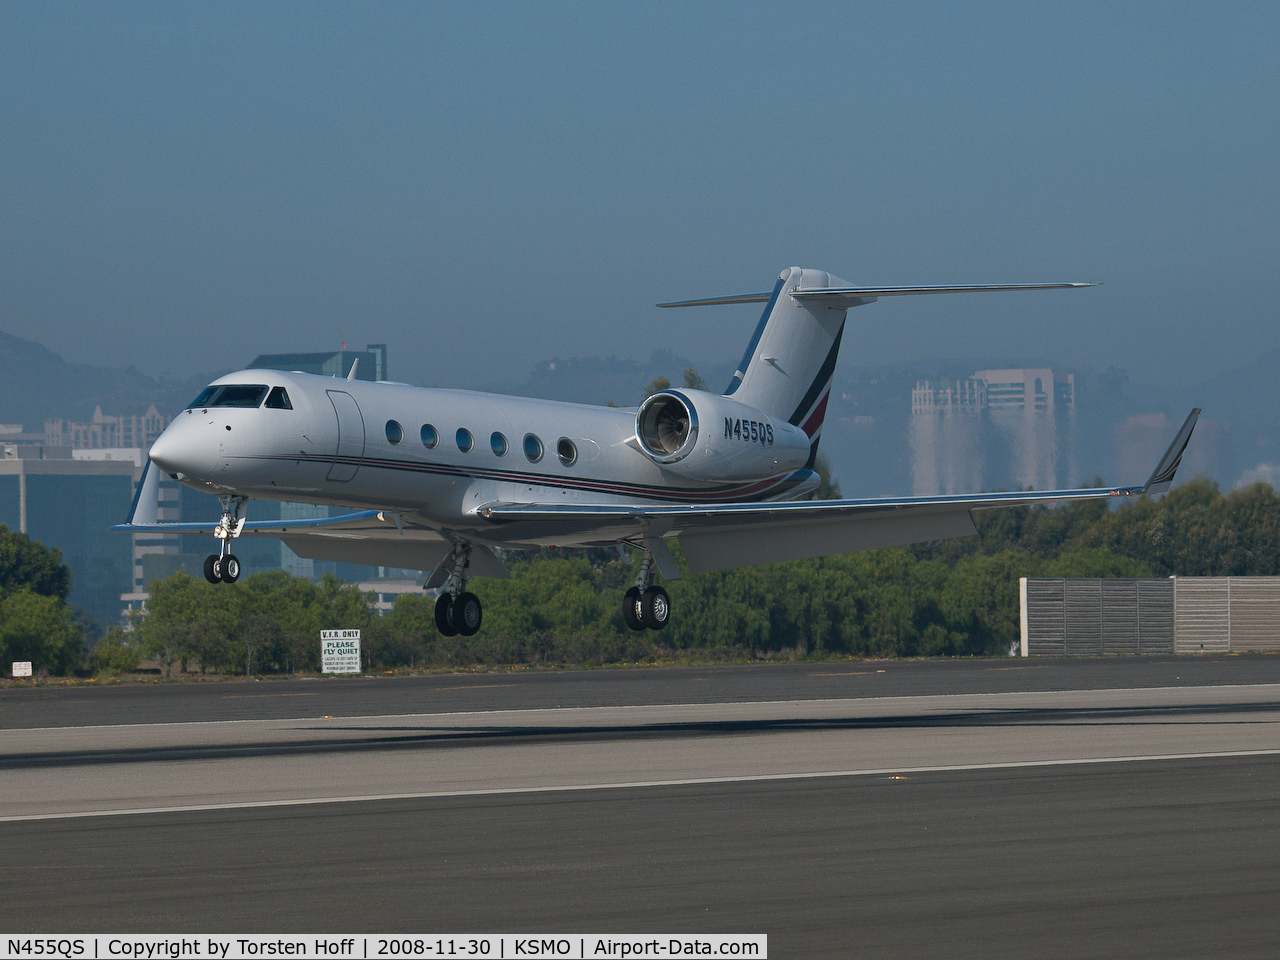 N455QS, 2007 Gulfstream Aerospace GIV-X (G450) C/N 4074, N455QS arriving on RWY 21